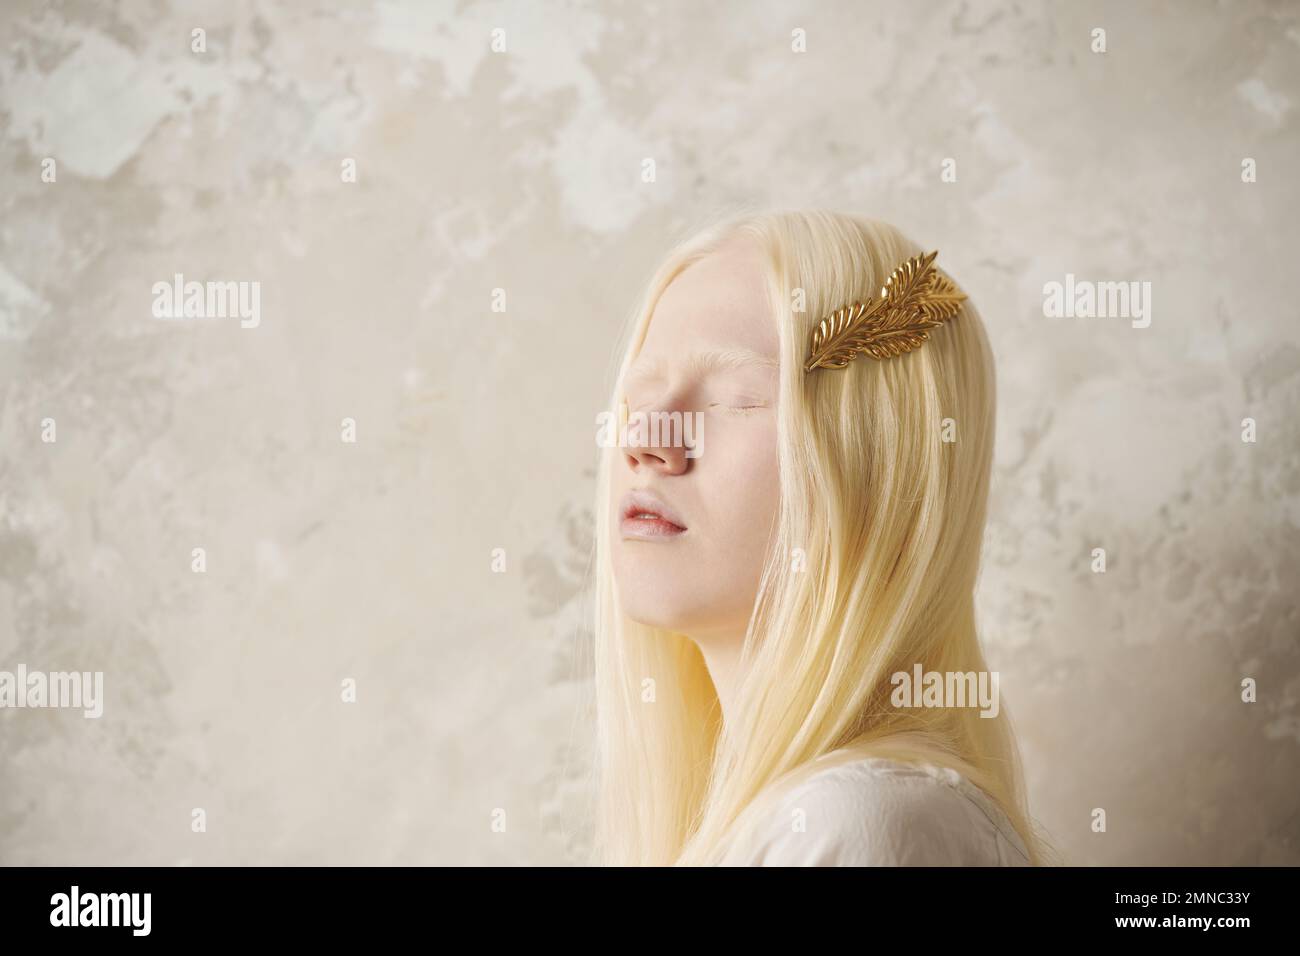 Junge, wunderschöne Albino-Frau mit goldener Haarnadel in langen blonden Haaren, die ihre Augen geschlossen hält, während sie gegen die Marmorwand steht Stockfoto